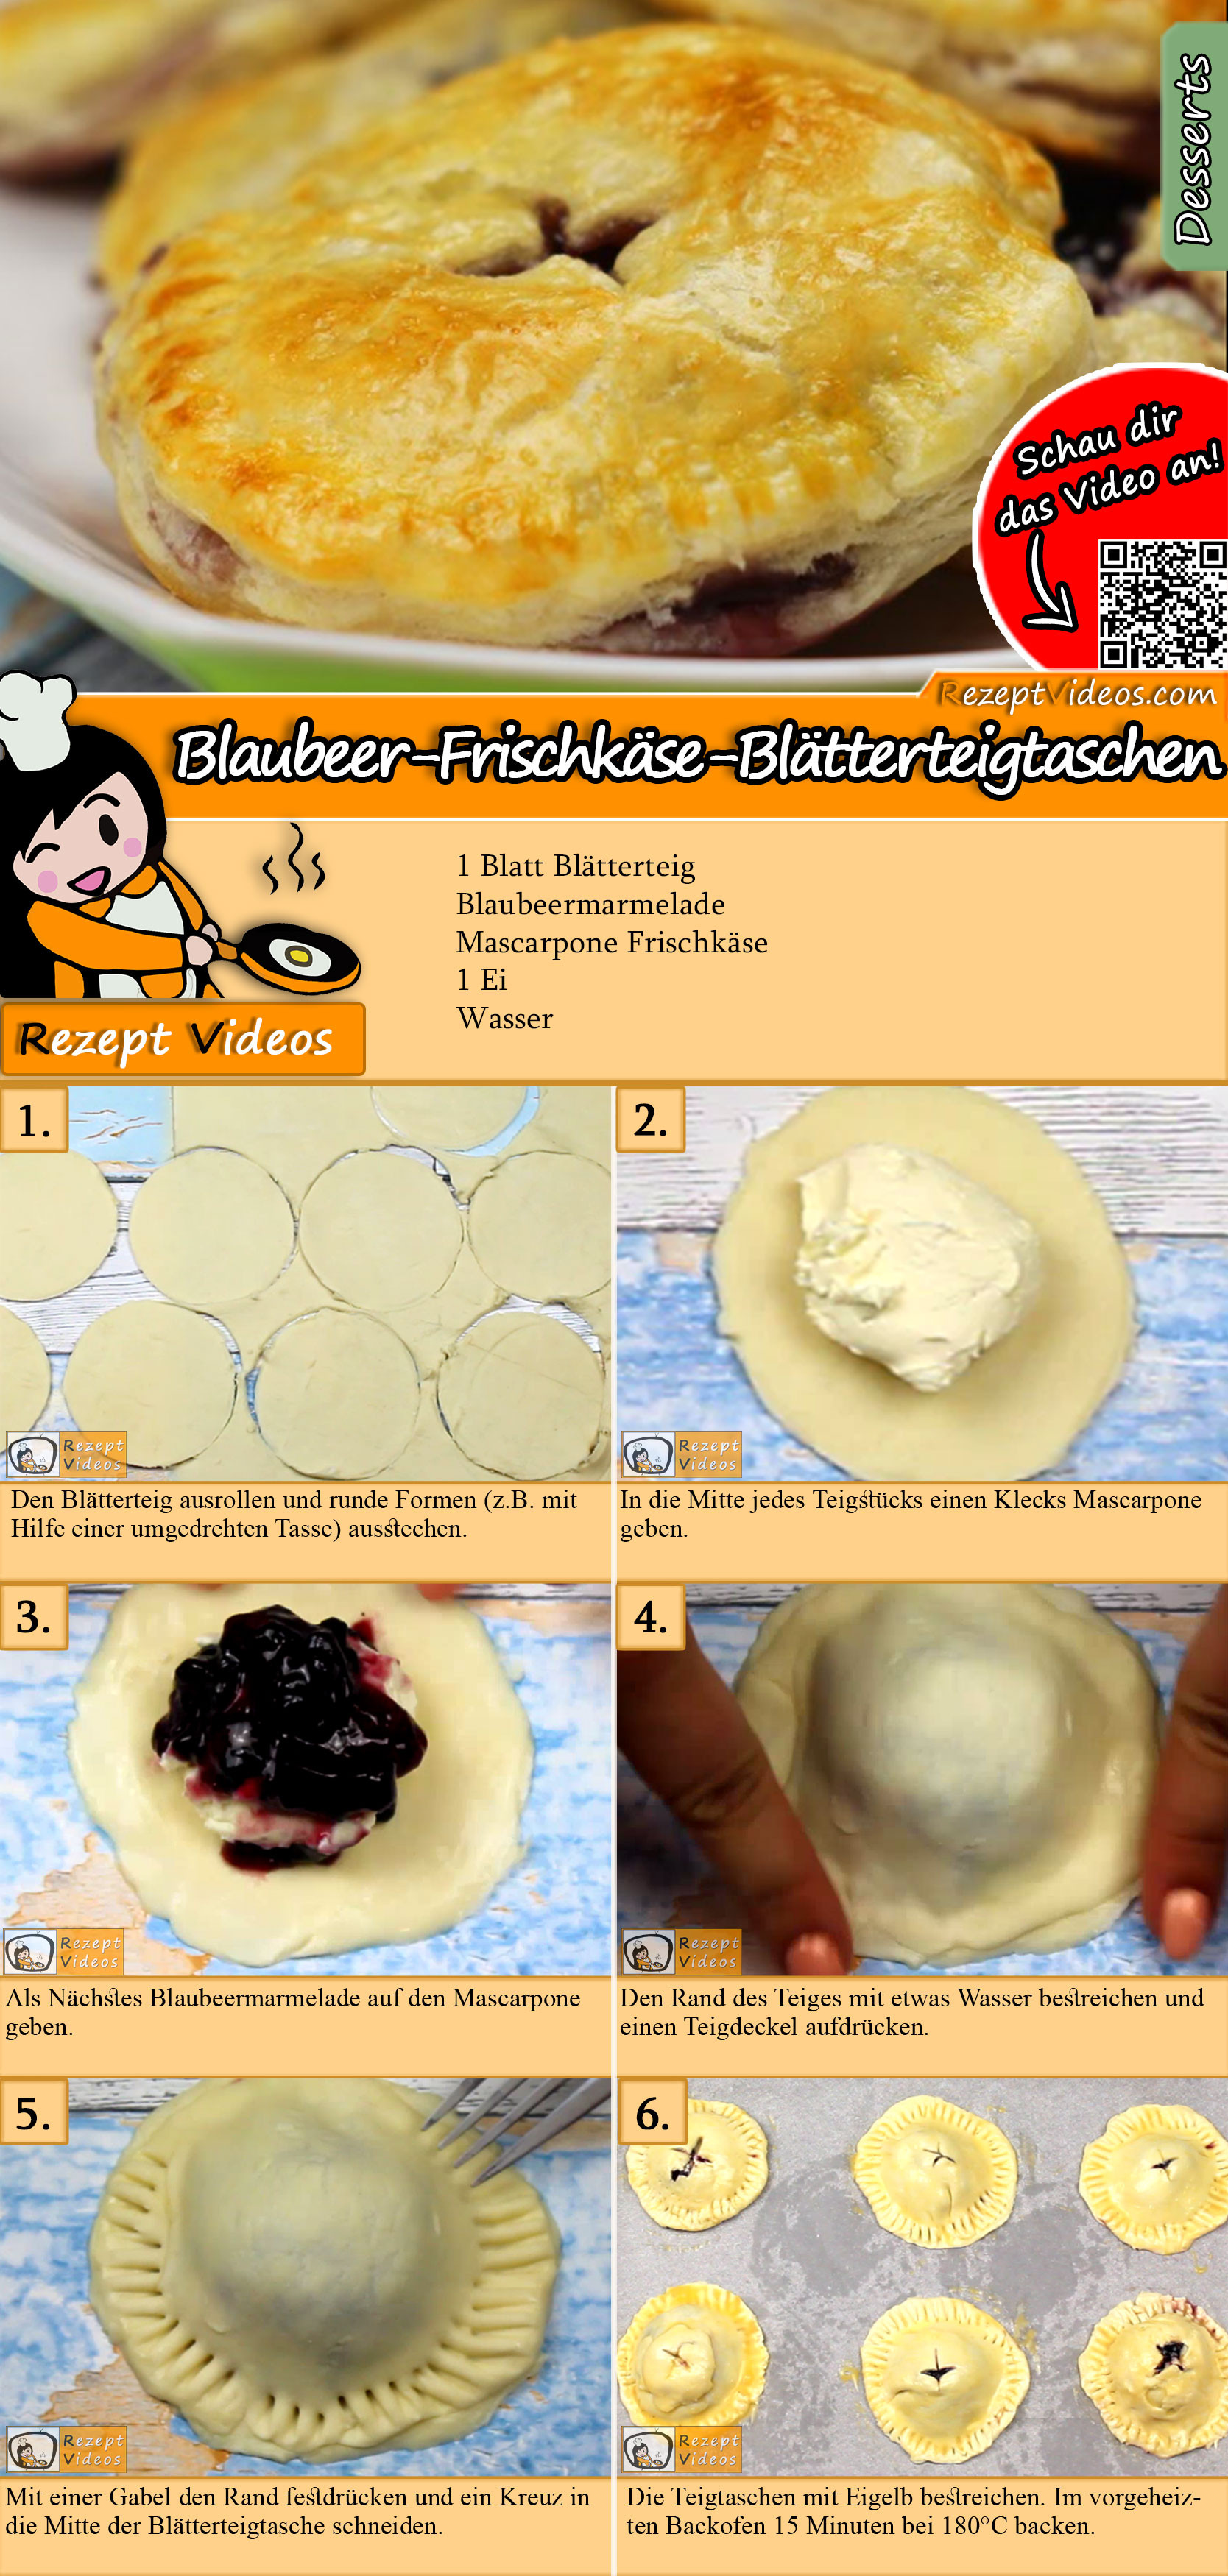 Blaubeer-Frischkäse-Blätterteigtaschen Rezept mit Videos